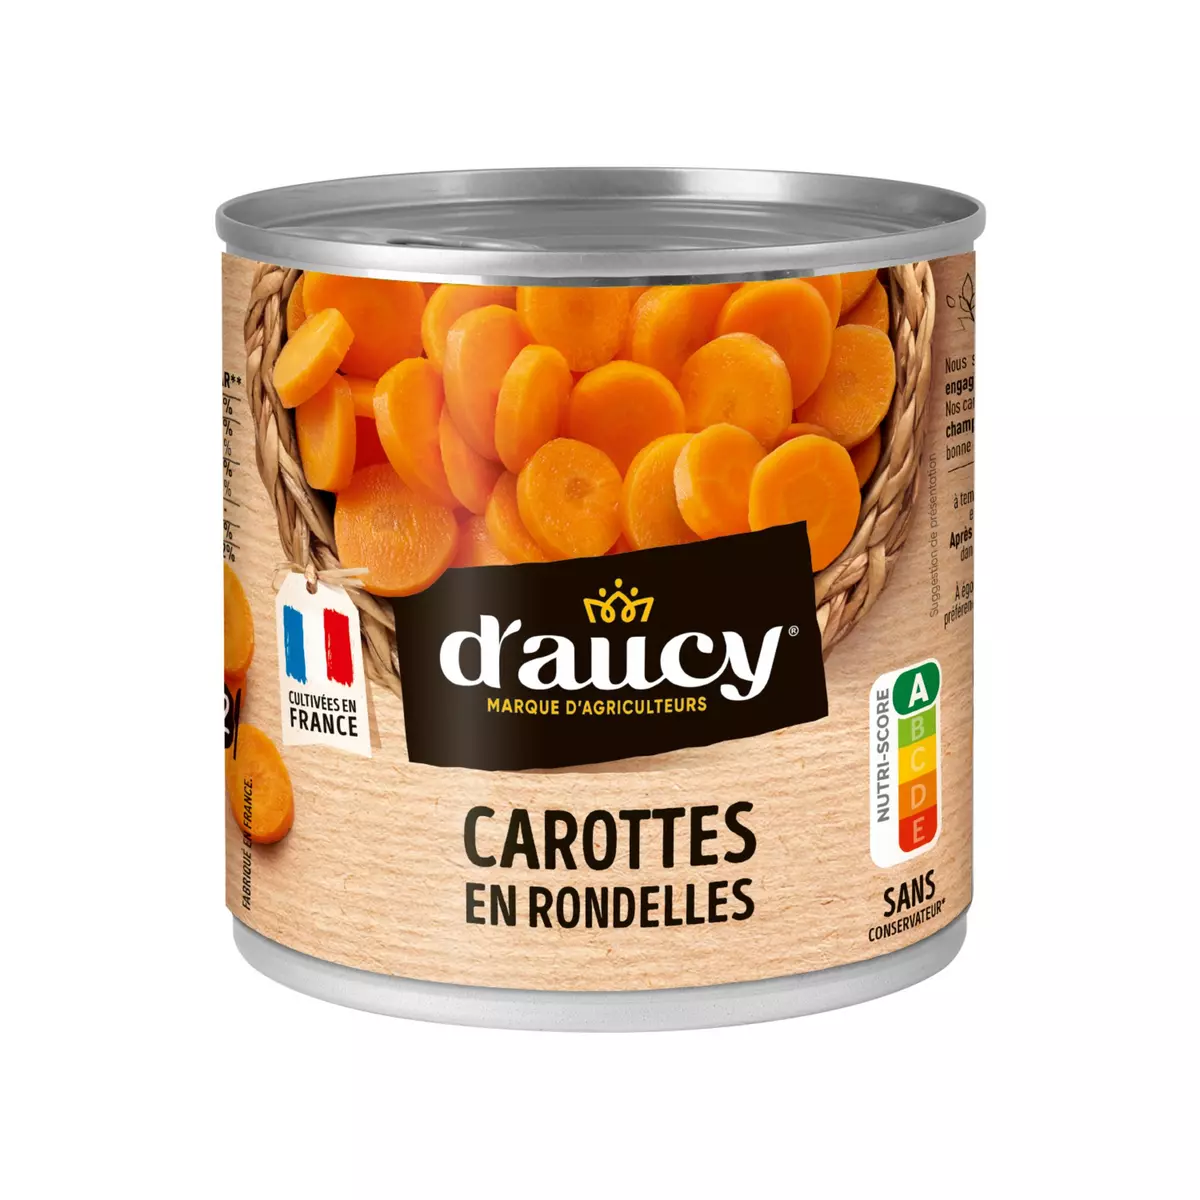 D'AUCY Carottes en rondelles 100% cultivées en France 240g